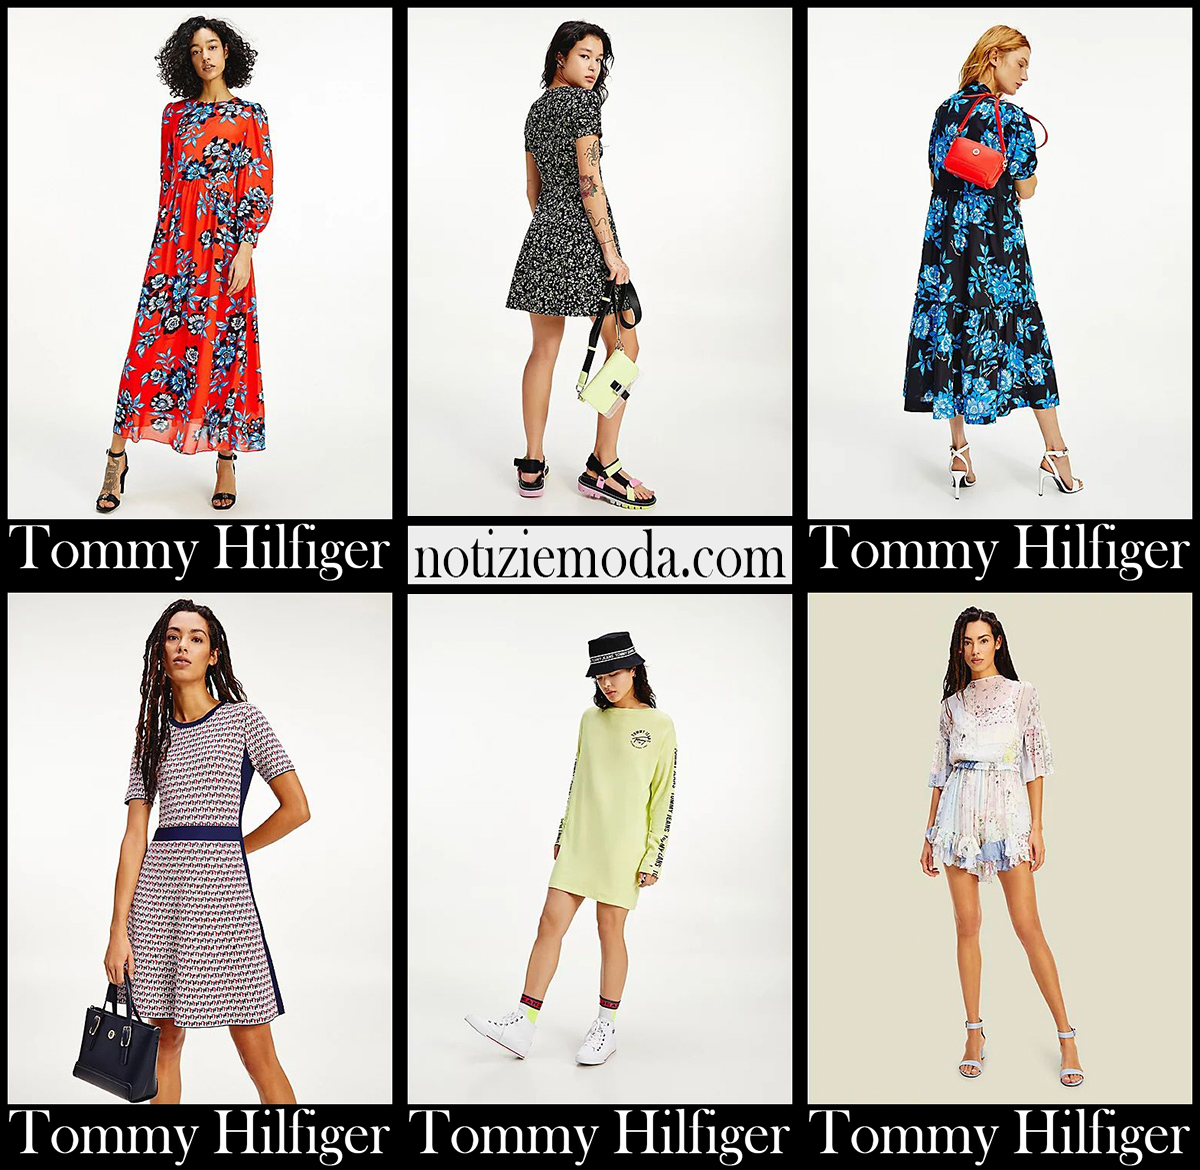 Nuovi arrivi abiti Tommy Hilfiger 2021 collezione donna